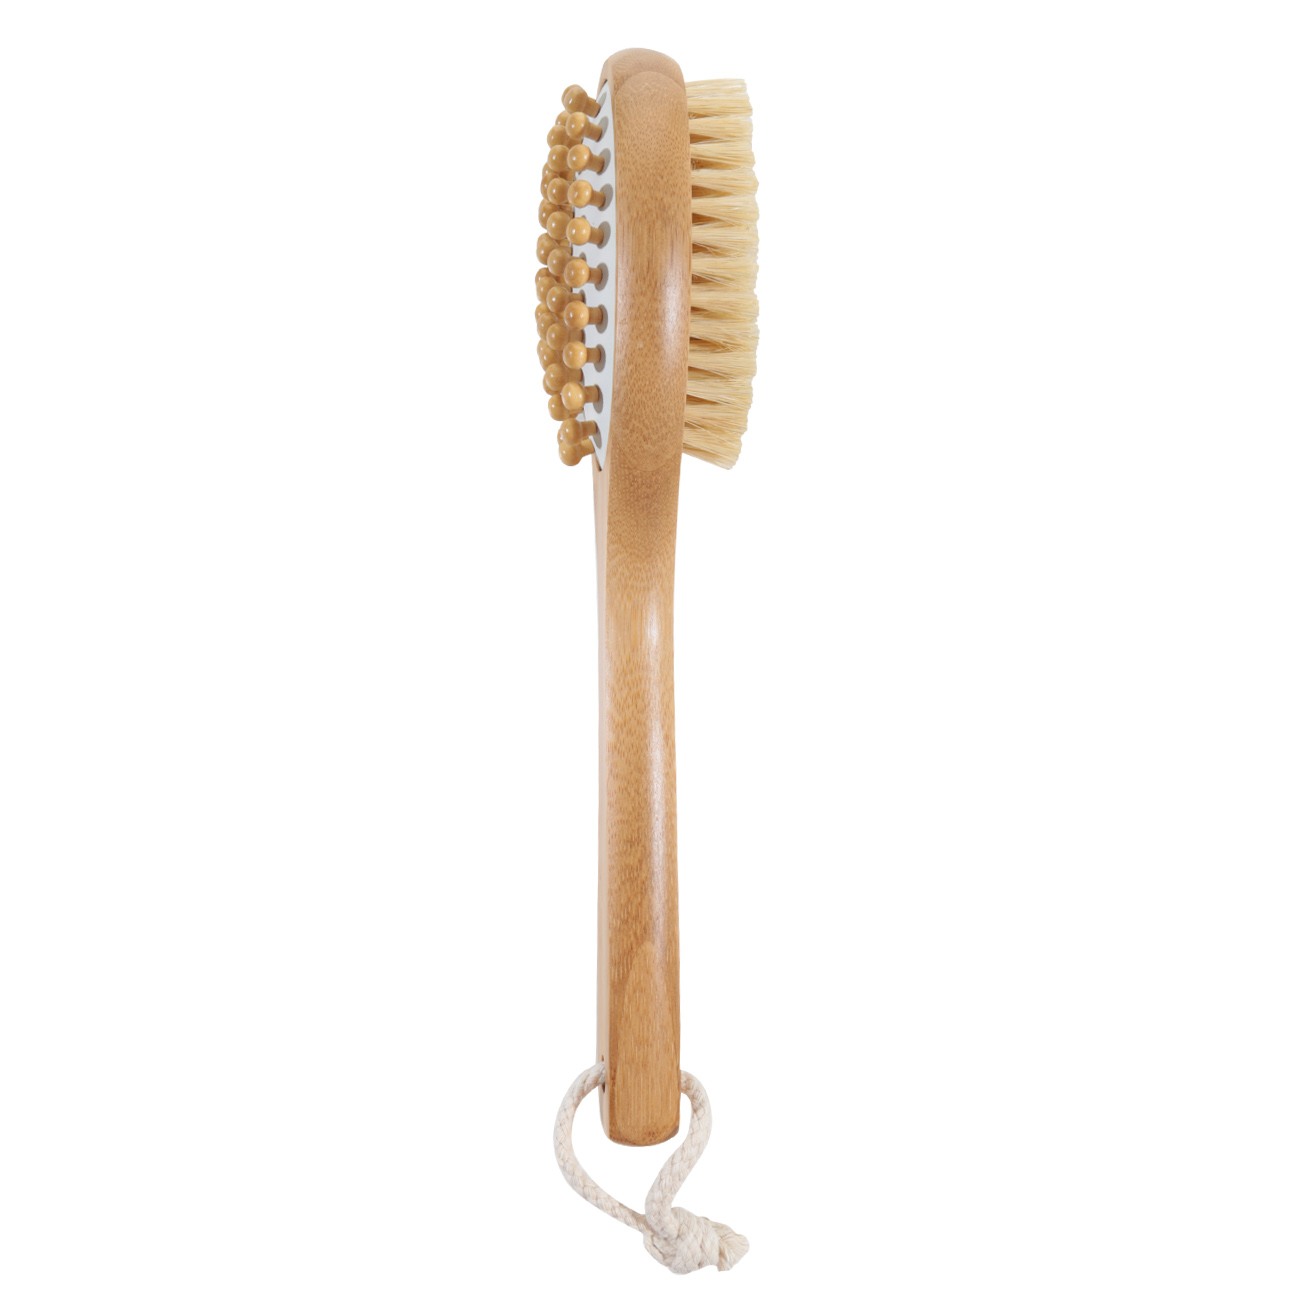 Щетка для сухого массажа, 30 см, двусторонняя, бамбук/сизаль, Bamboo spa изображение № 3